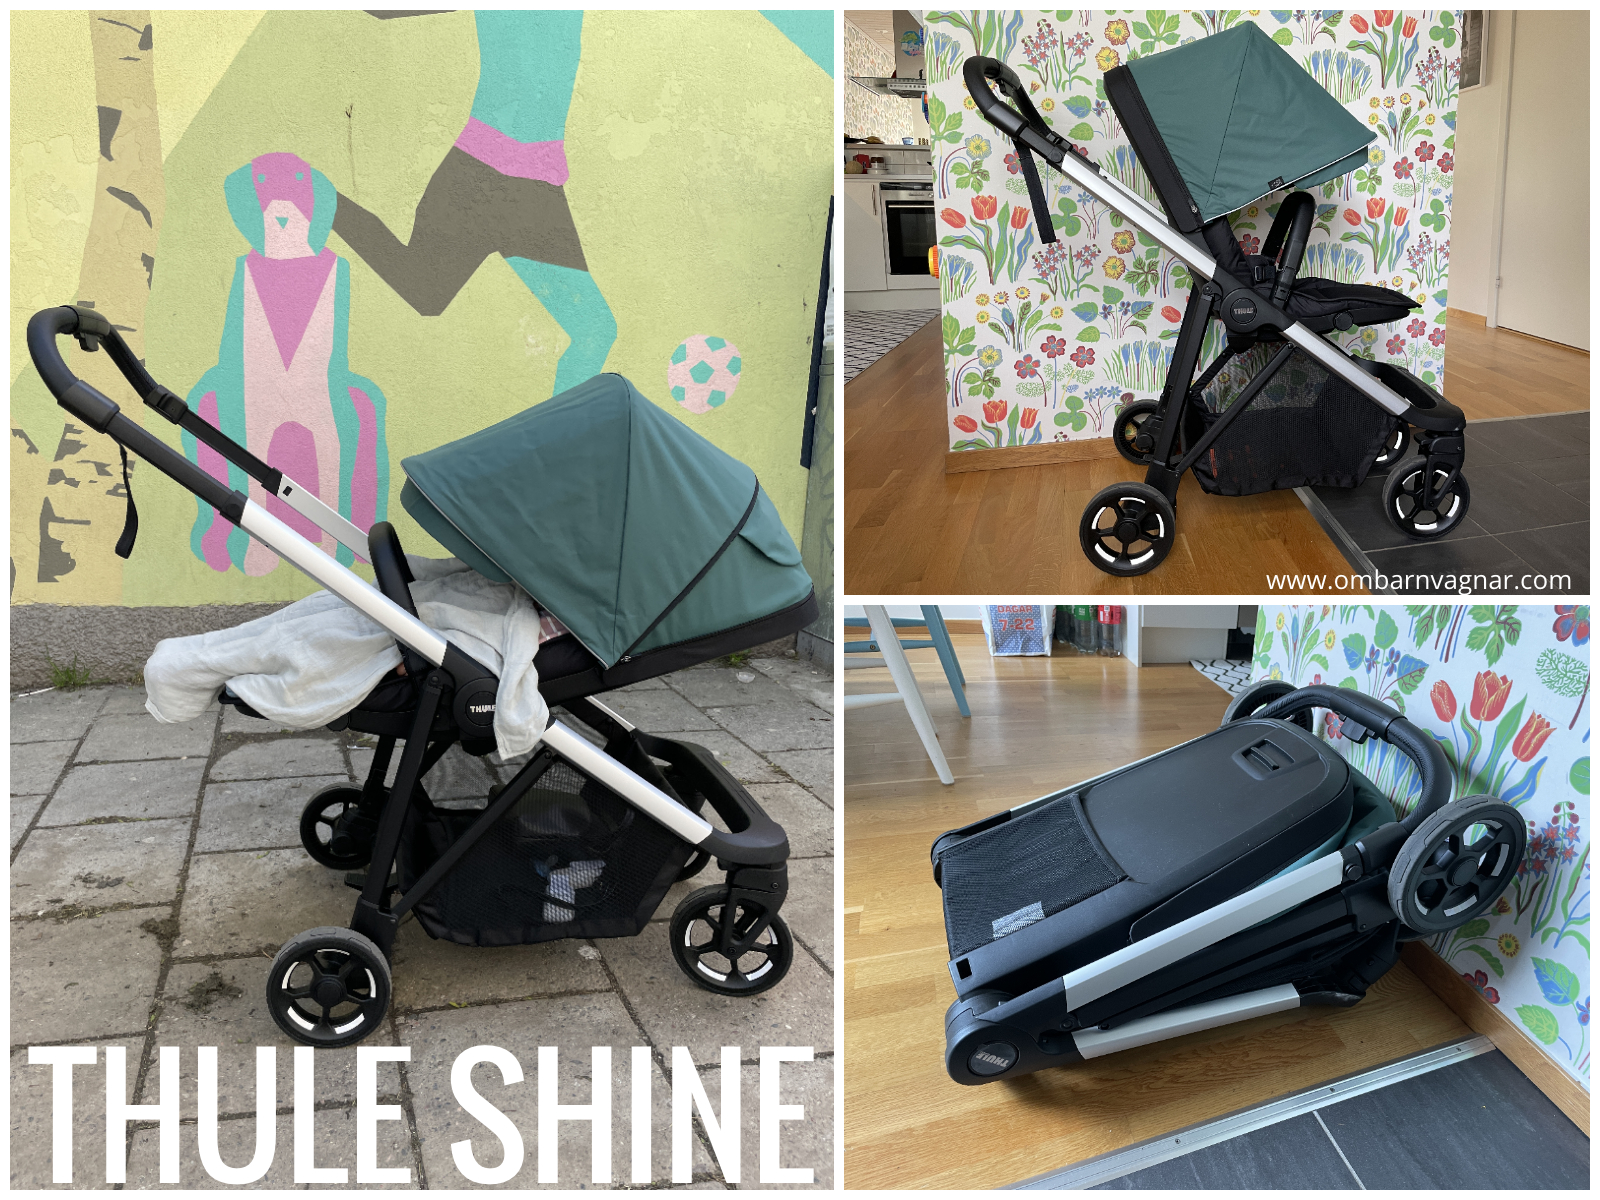 Recension av Thule Shine, liten och smidig barnvagn med vändbar sittdel.